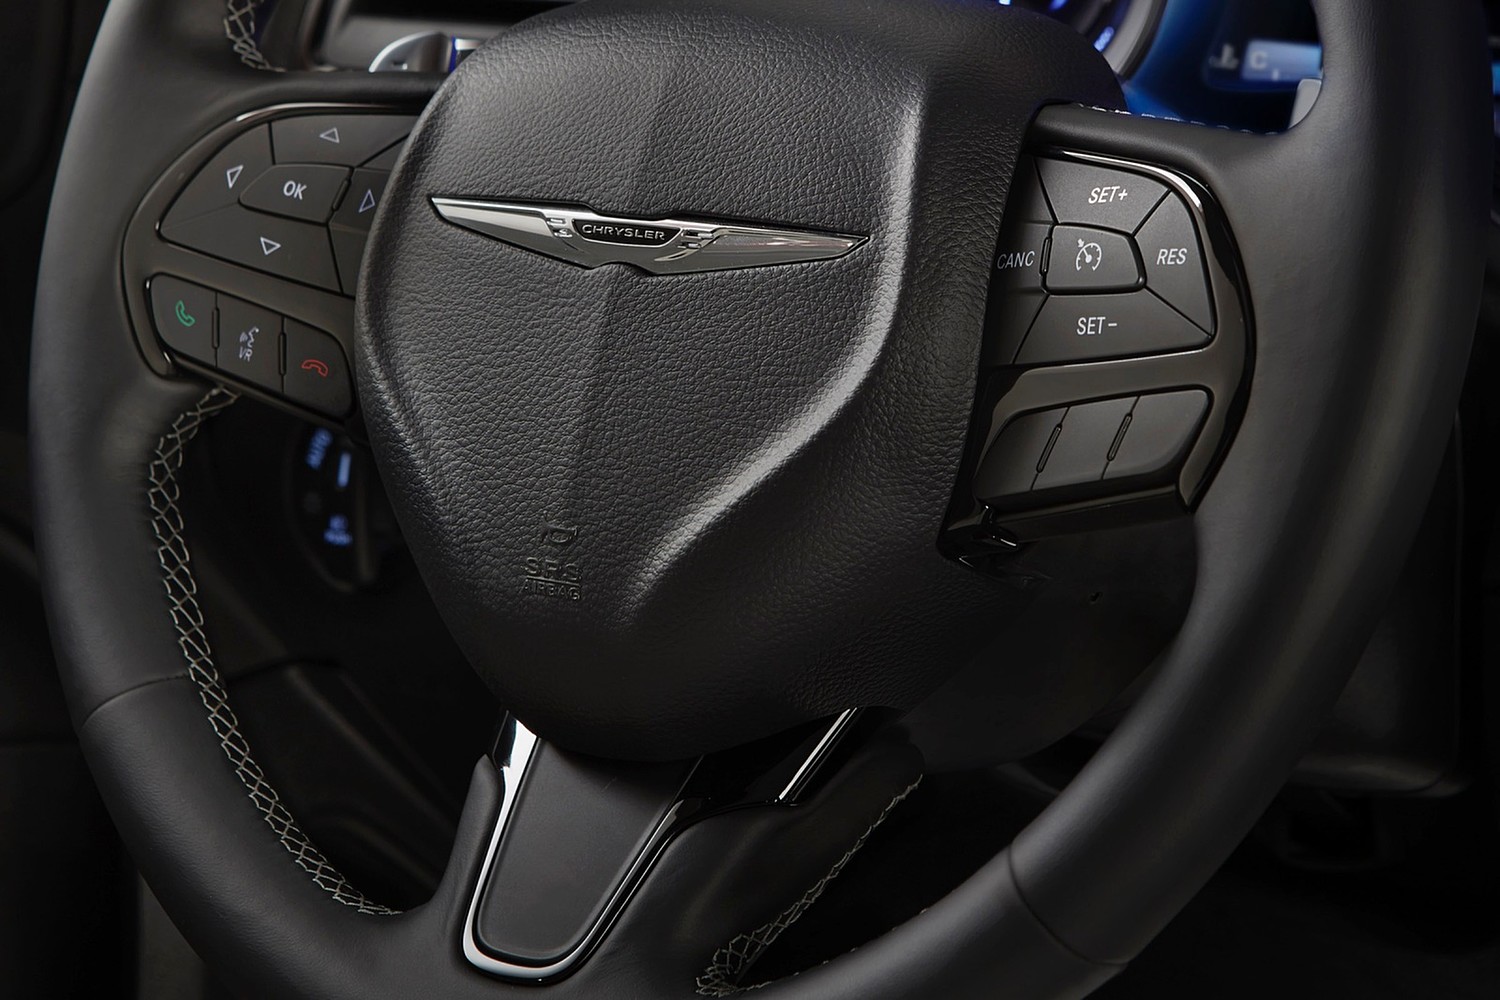 Chrysler 300 S Sedan Steering Wheel Detail (2015 model year shown)